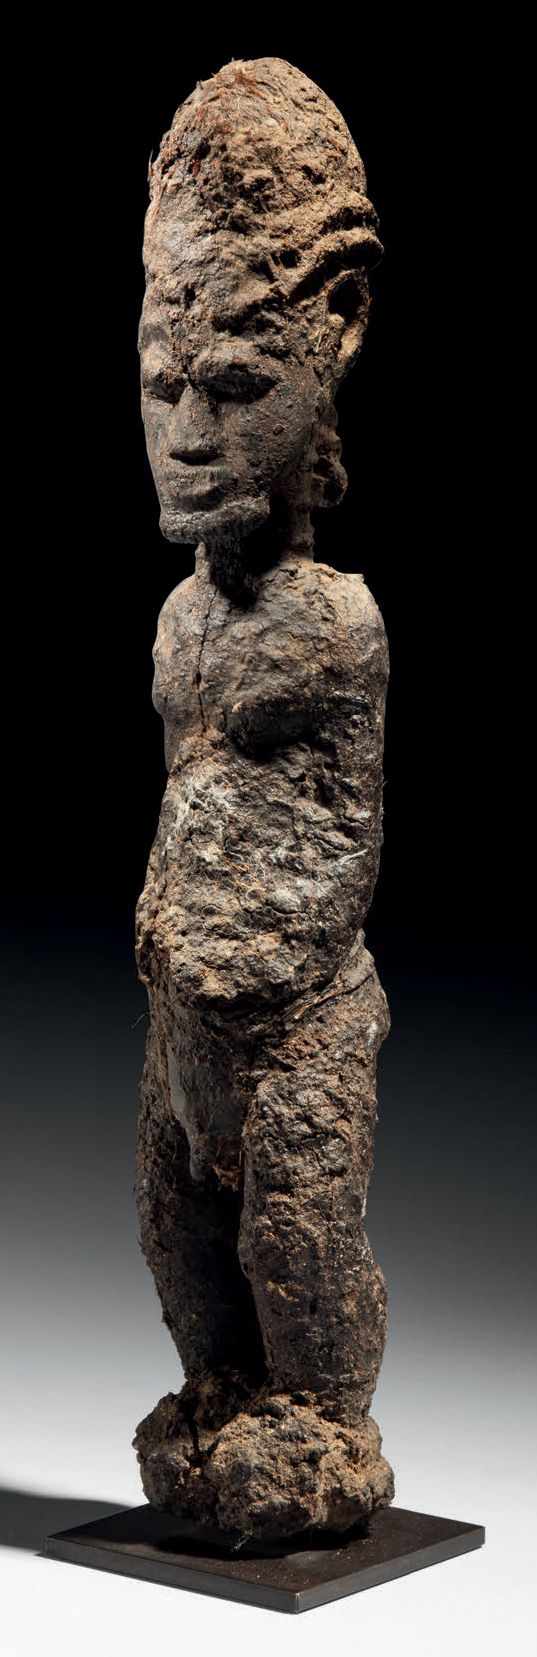 Null - STATUA DI BAULE, COSTA D'AVORIO
Legno
H. 38 cm
Rappresenta una figura mas&hellip;